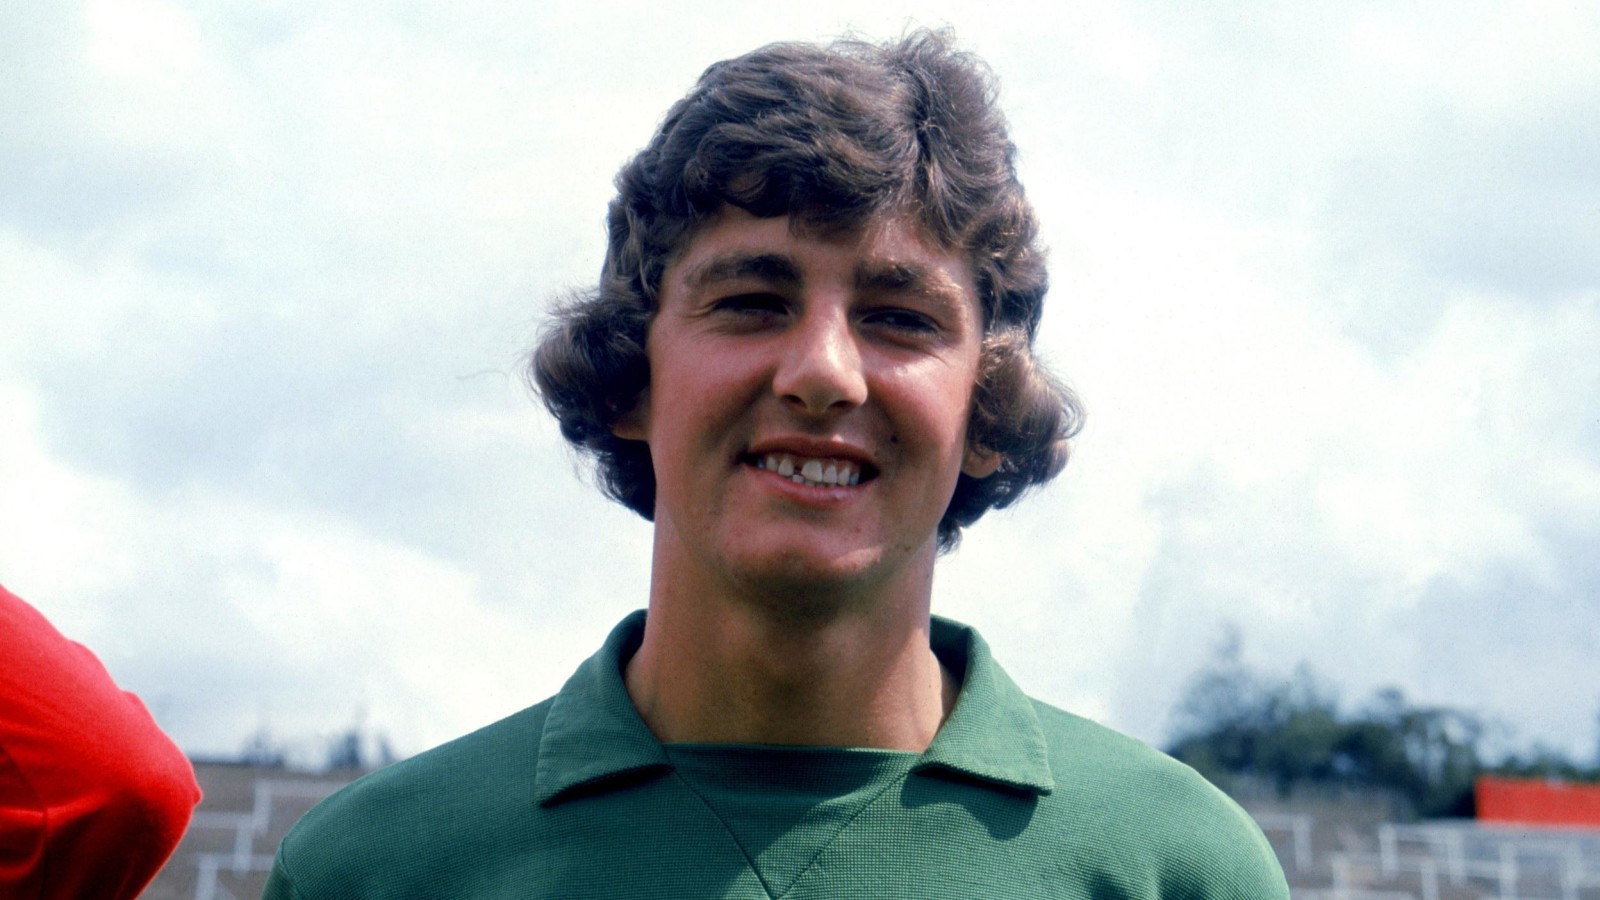 Former Charlton goalkeeper Graham Tutt